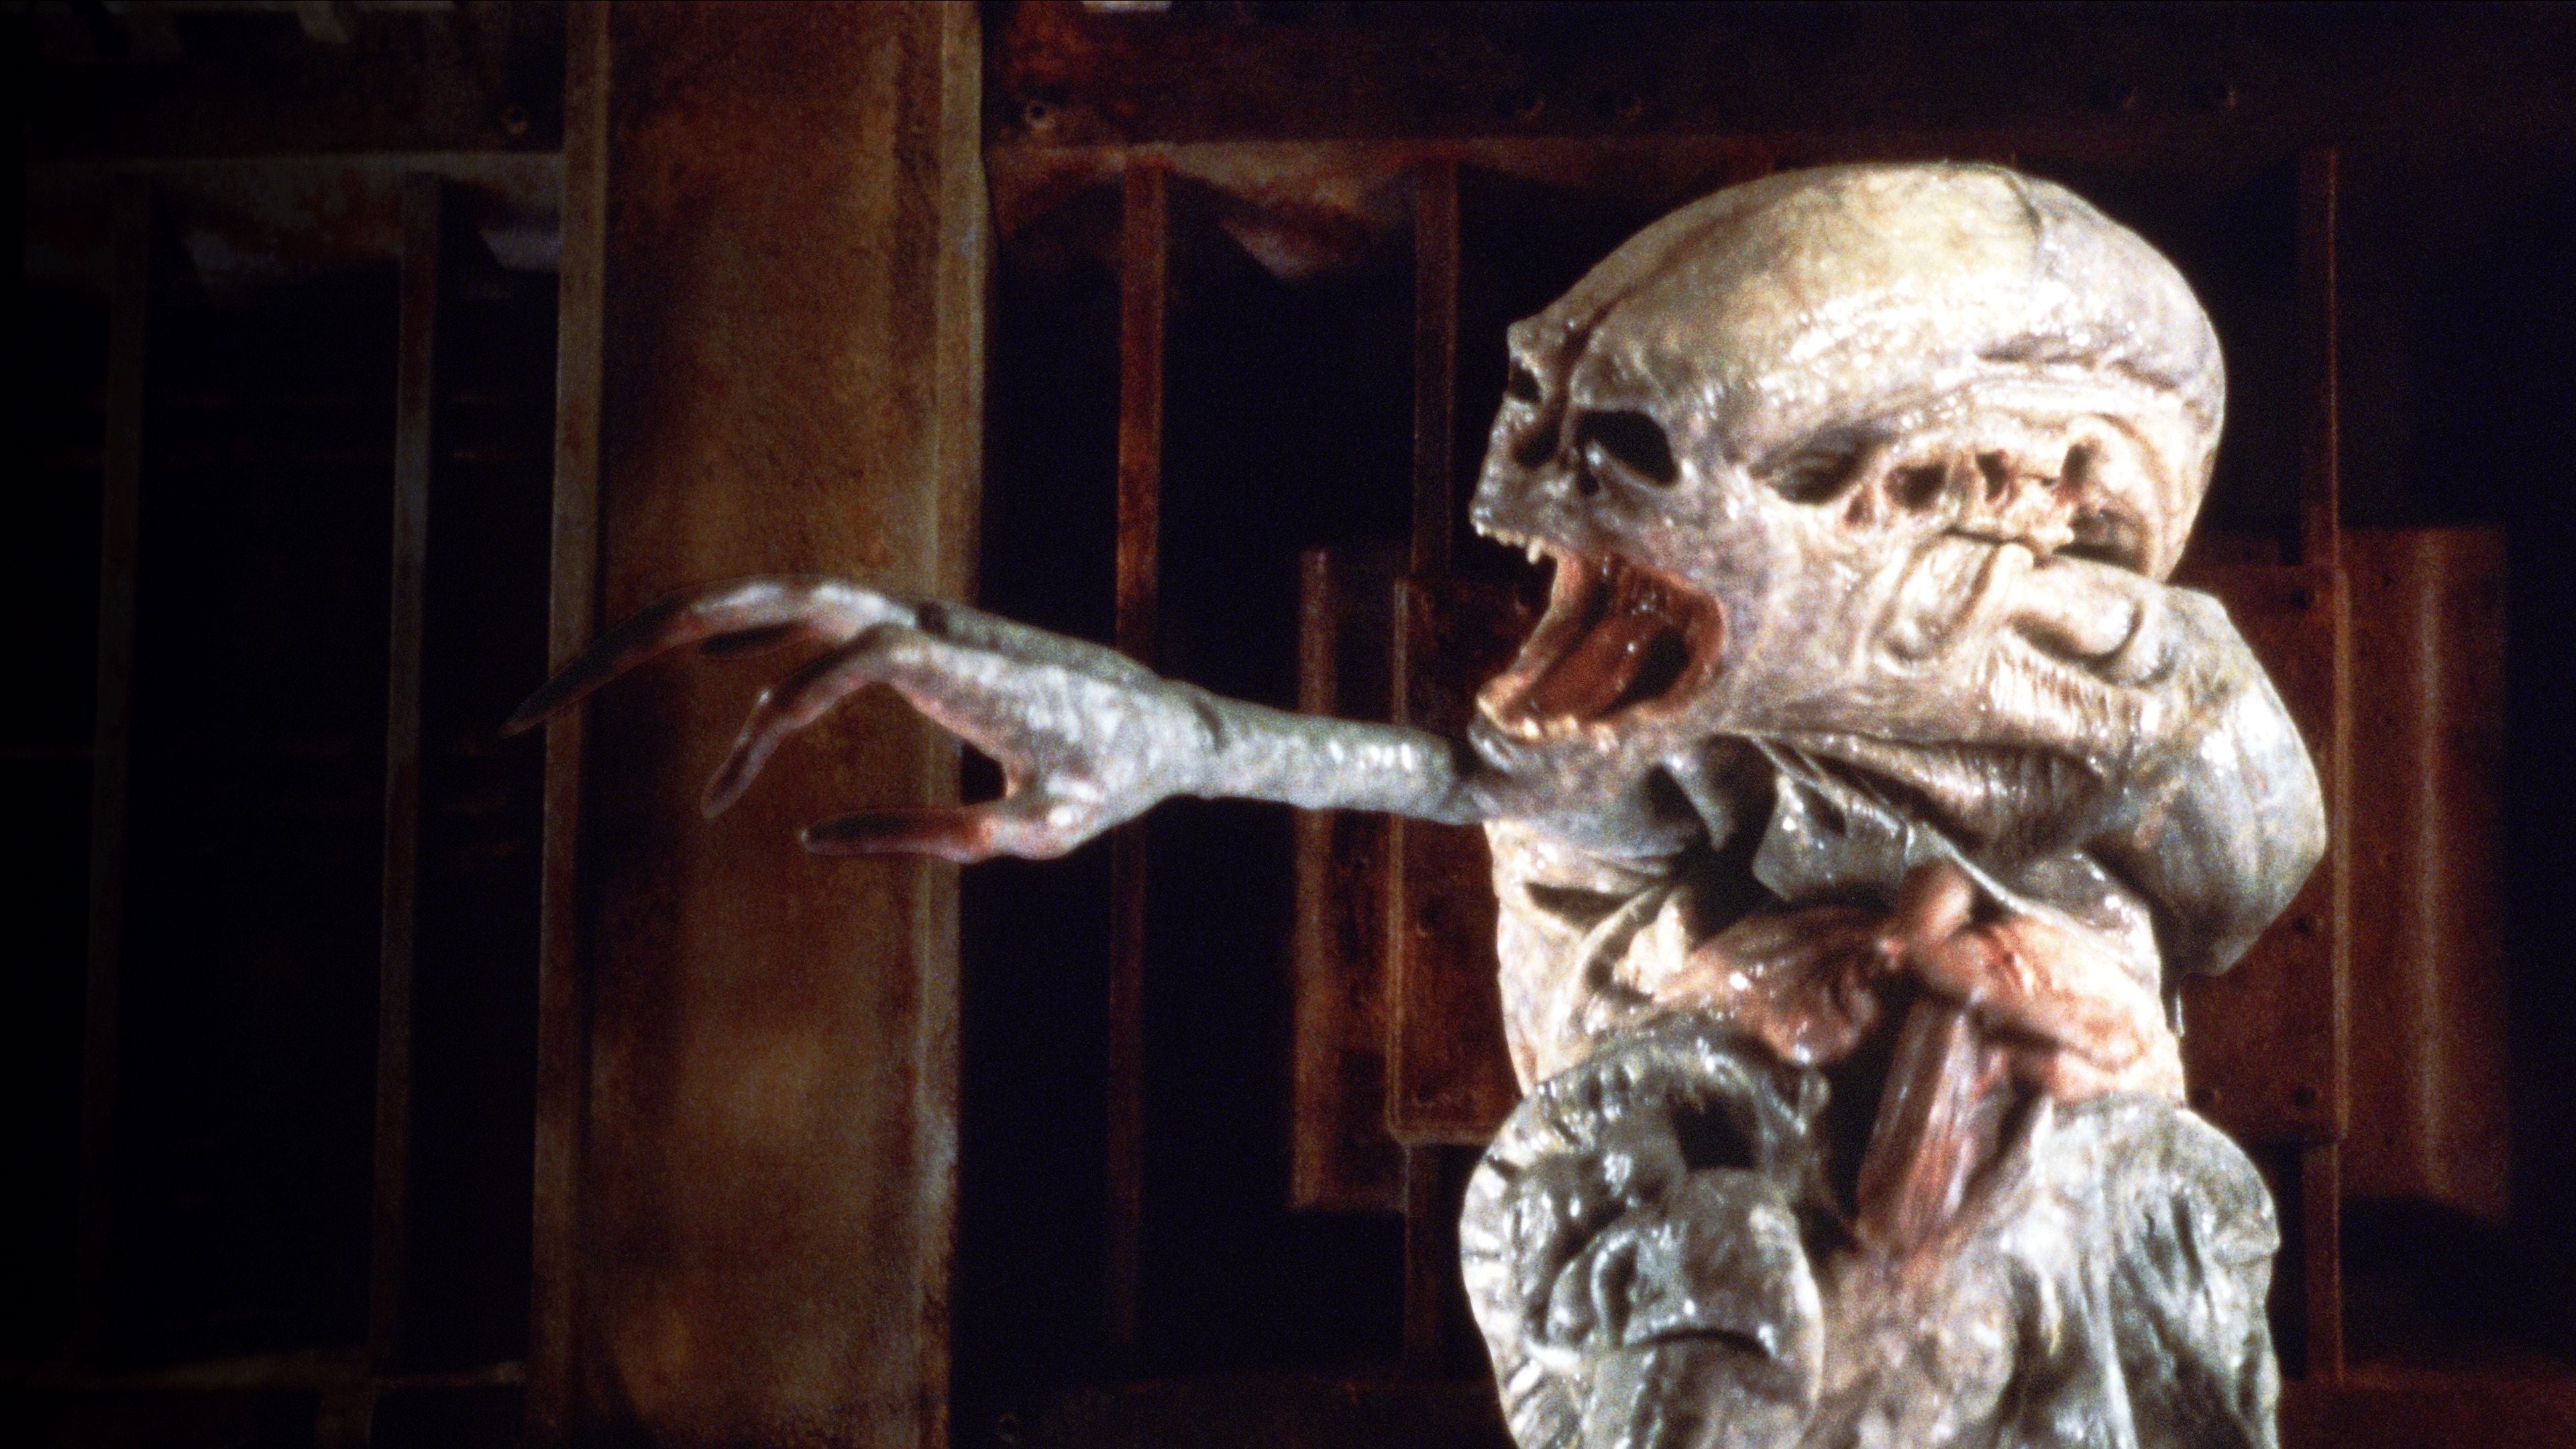 Alien 4. – Feltámad a Halál